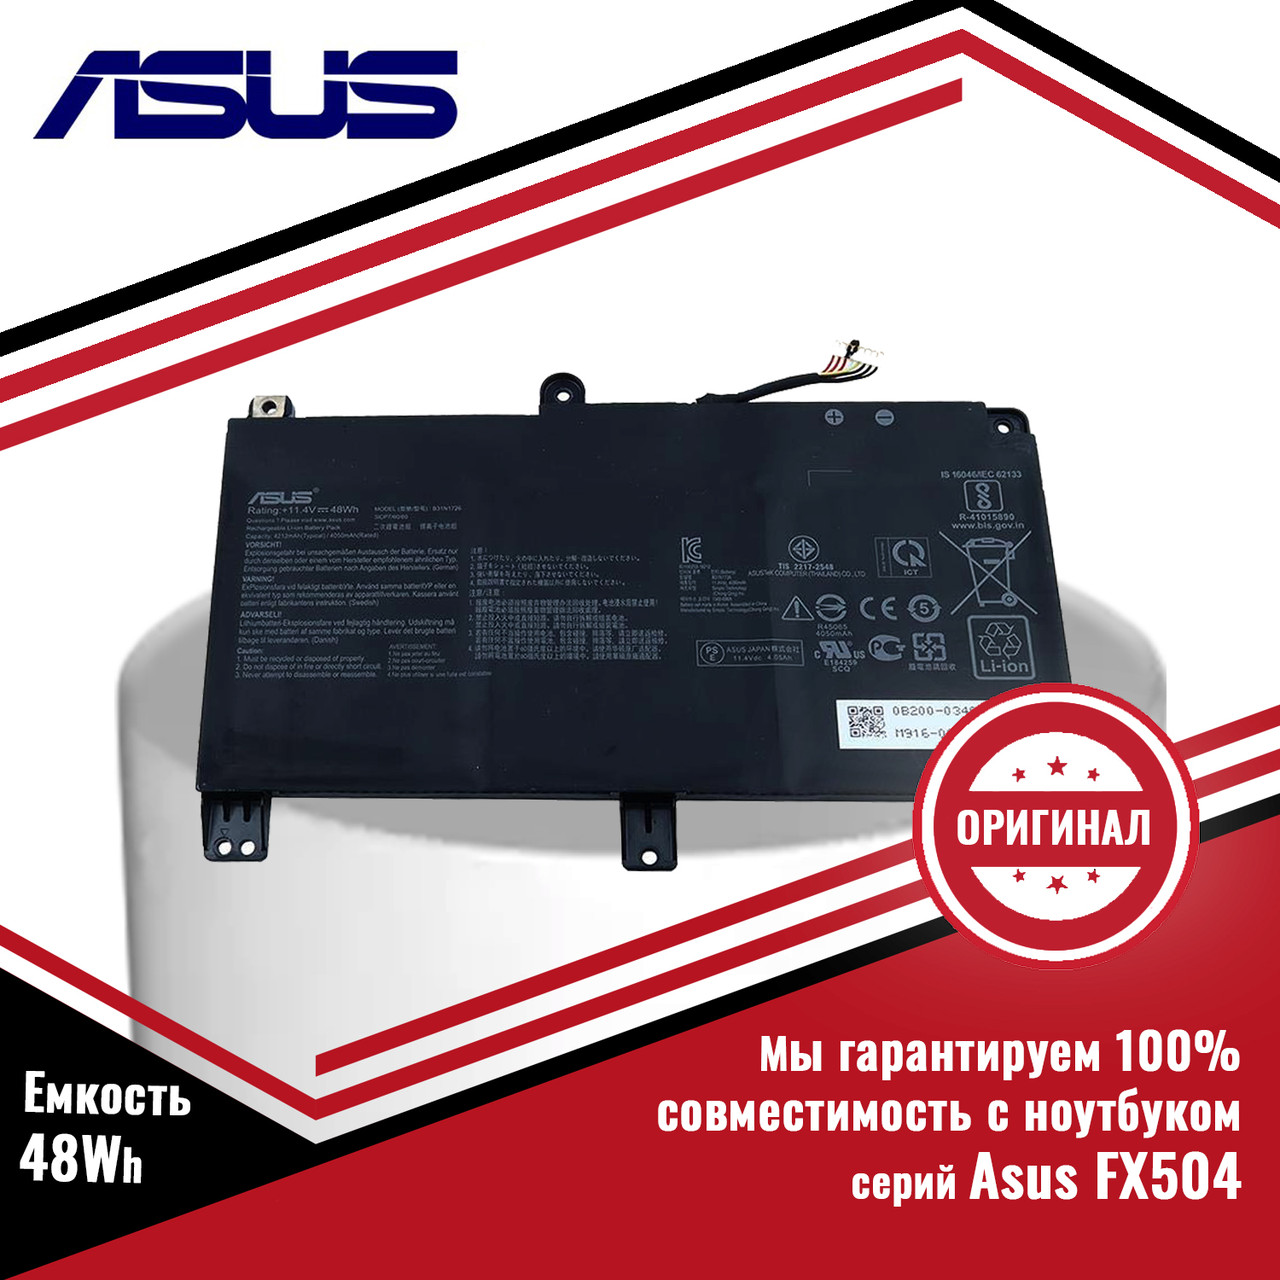 Оригинальный аккумулятор (батарея) для ноутбука серий Asus FX504 (B31N1726-1) 11.1V 48Wh